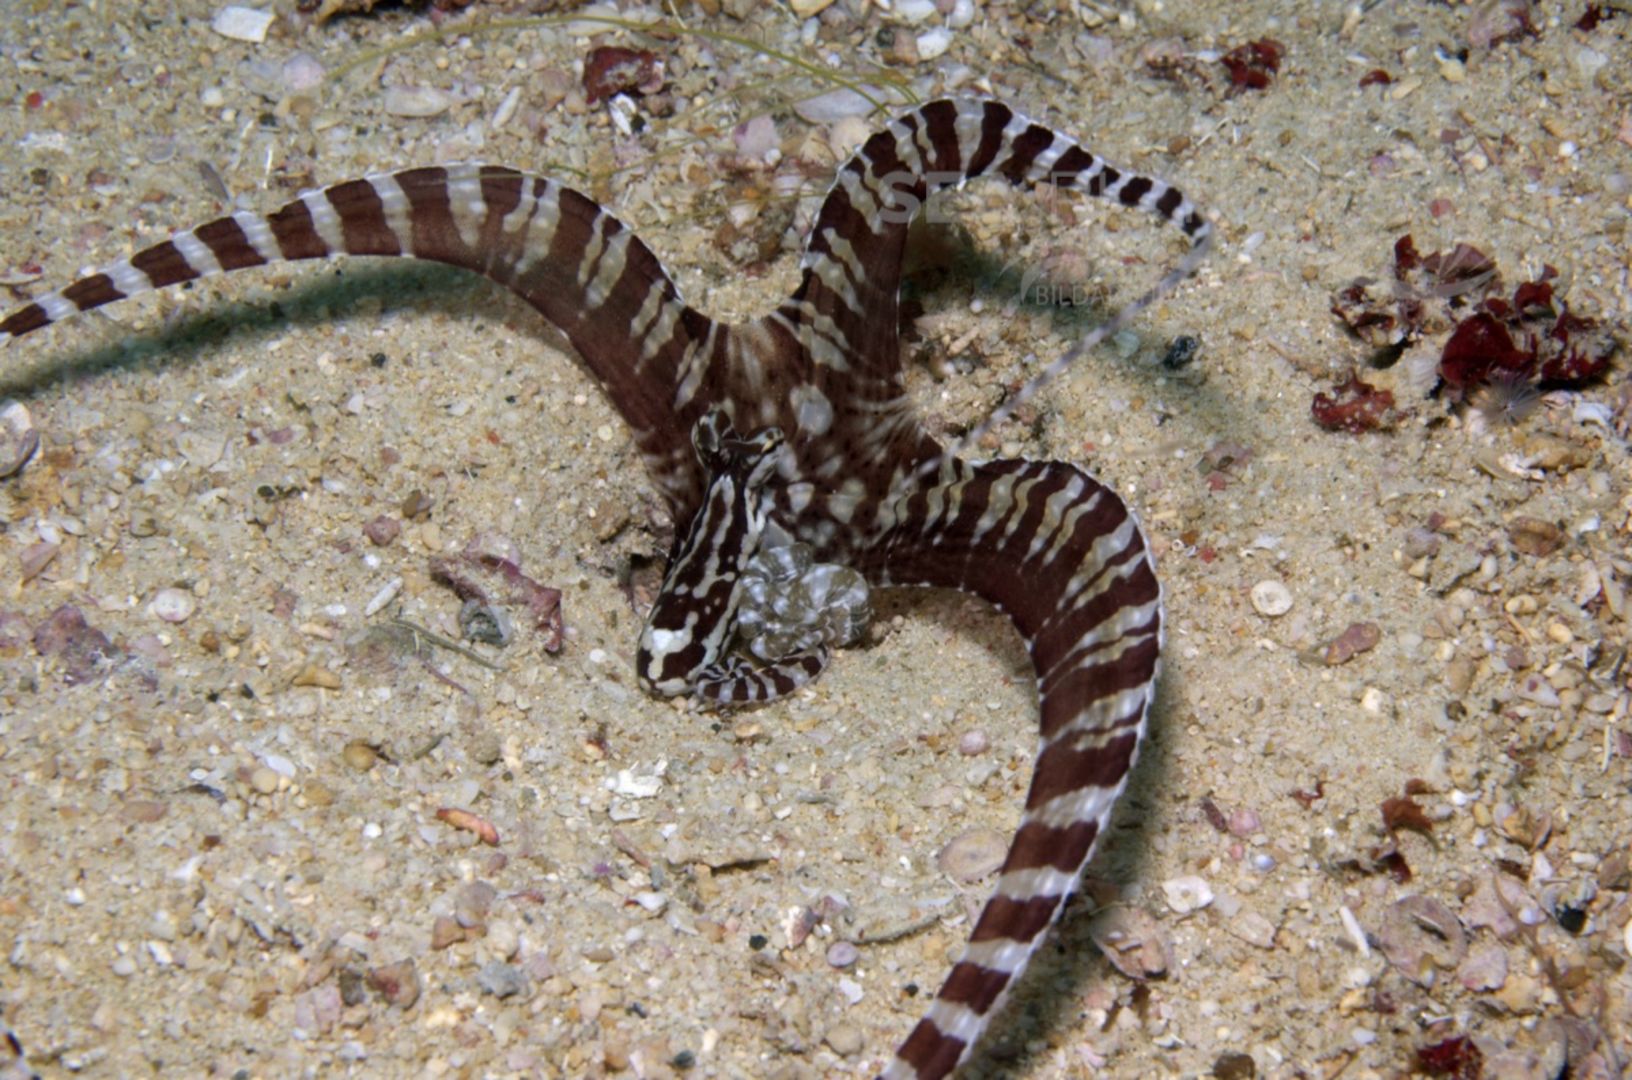 KV Mimikrykrake Octopus sp. PH 08 10570